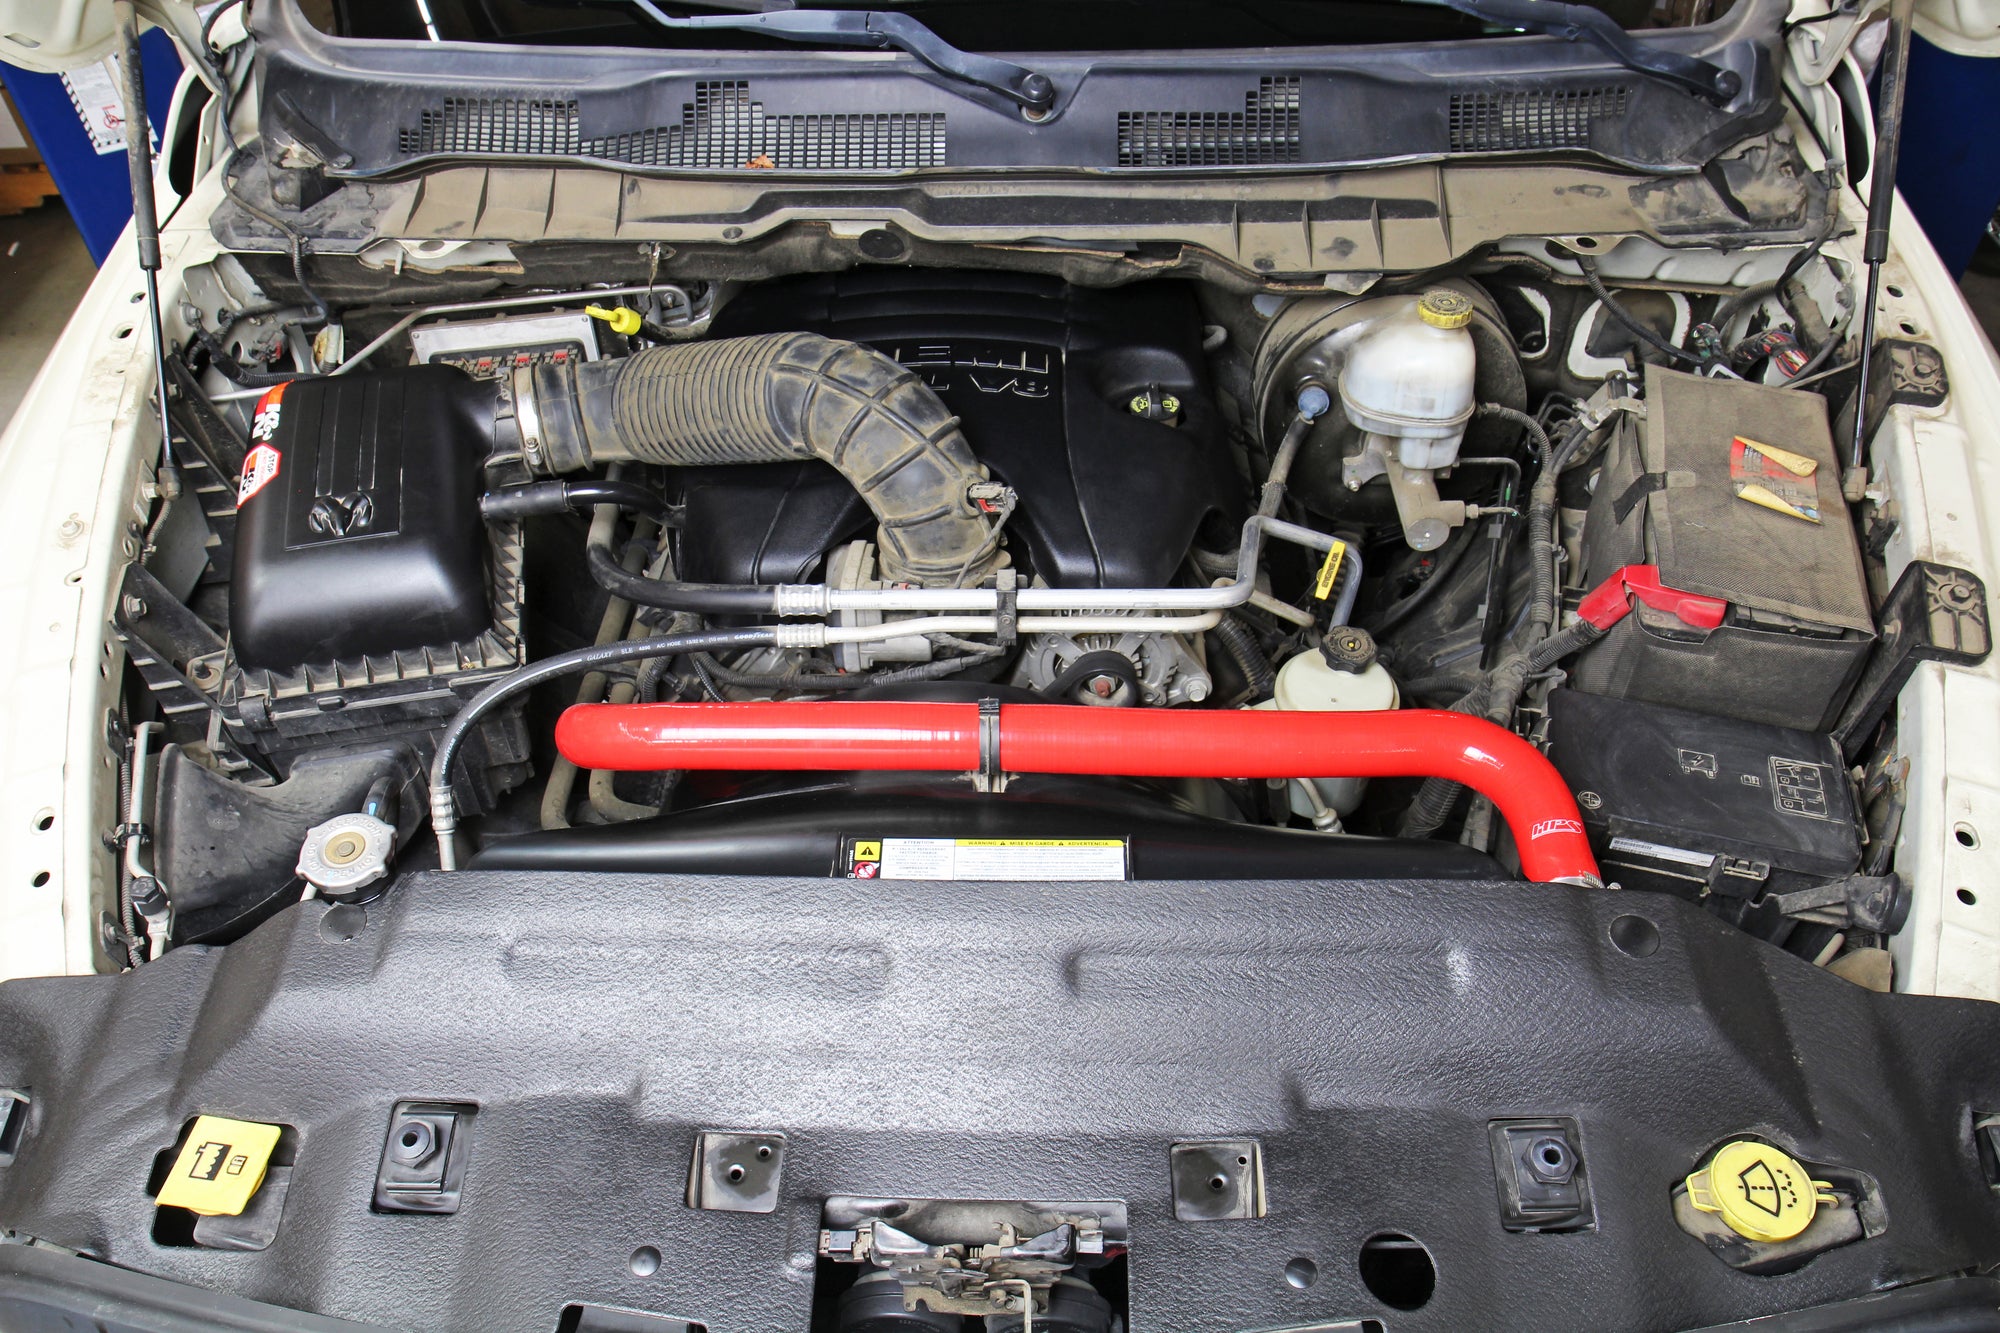 HPS Red Silicone Lower Upper Radiator Hoses Installed 13-18 Dodge Ram 2500 Pickup 5.7L V8 Hemi